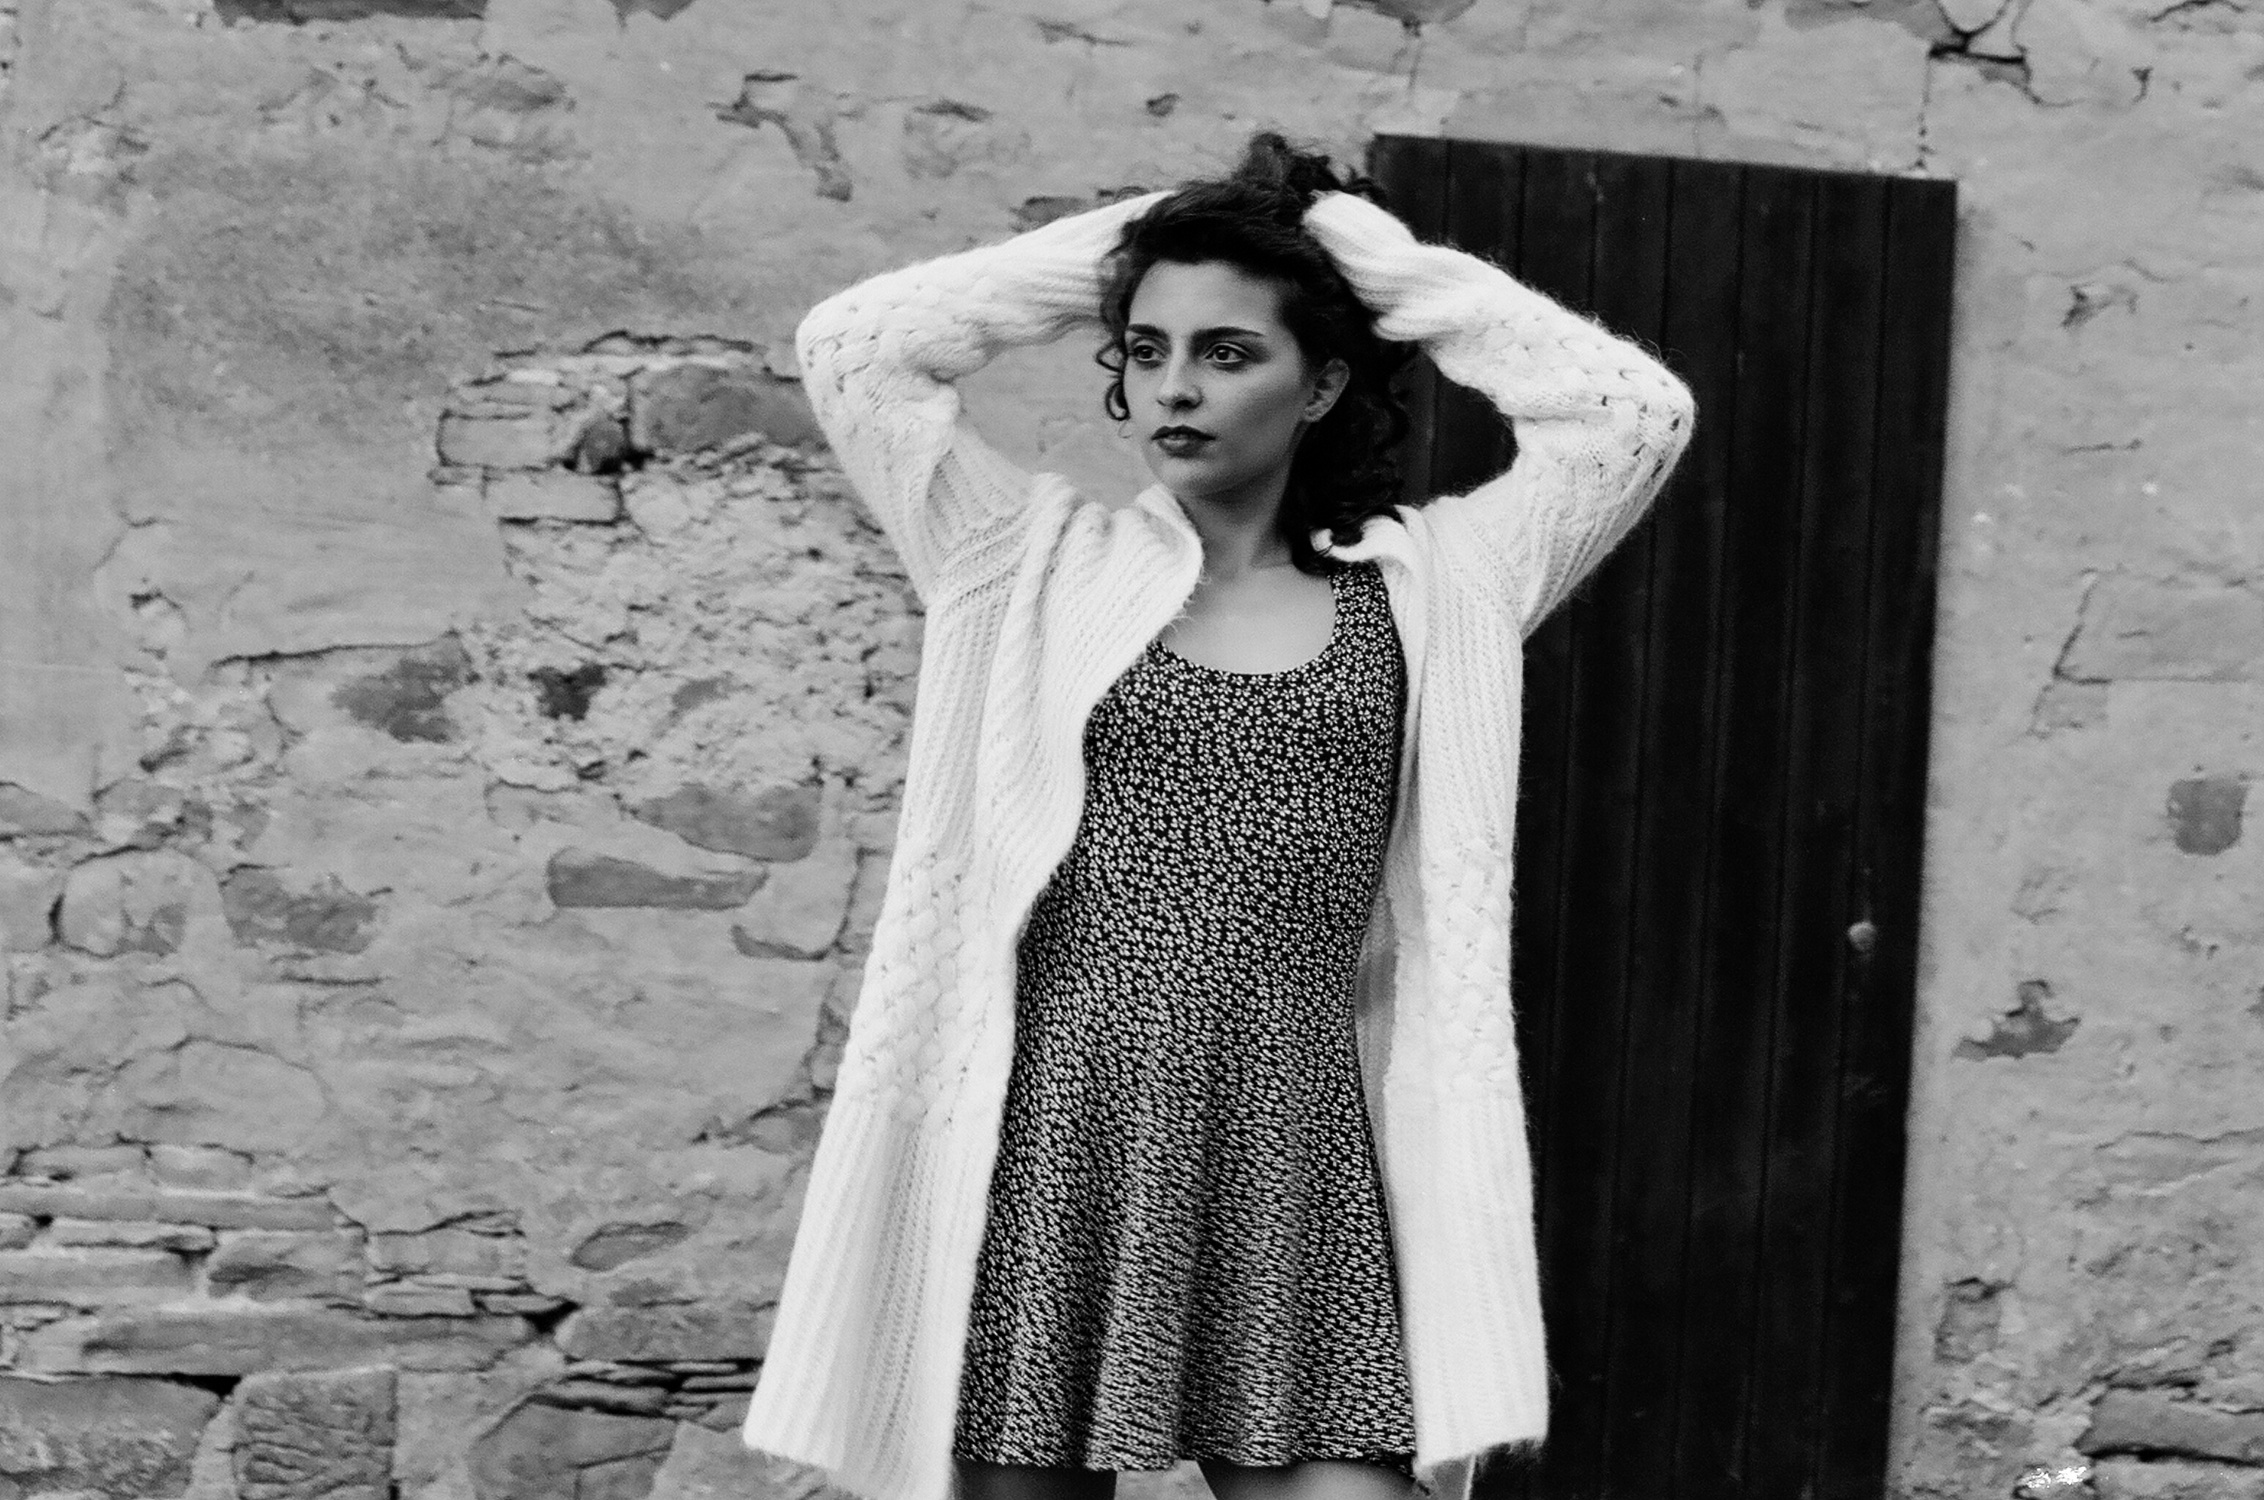 Ritratto in bianco e nero di ragazza con vestito a fiori, fotografia analogica e vintage